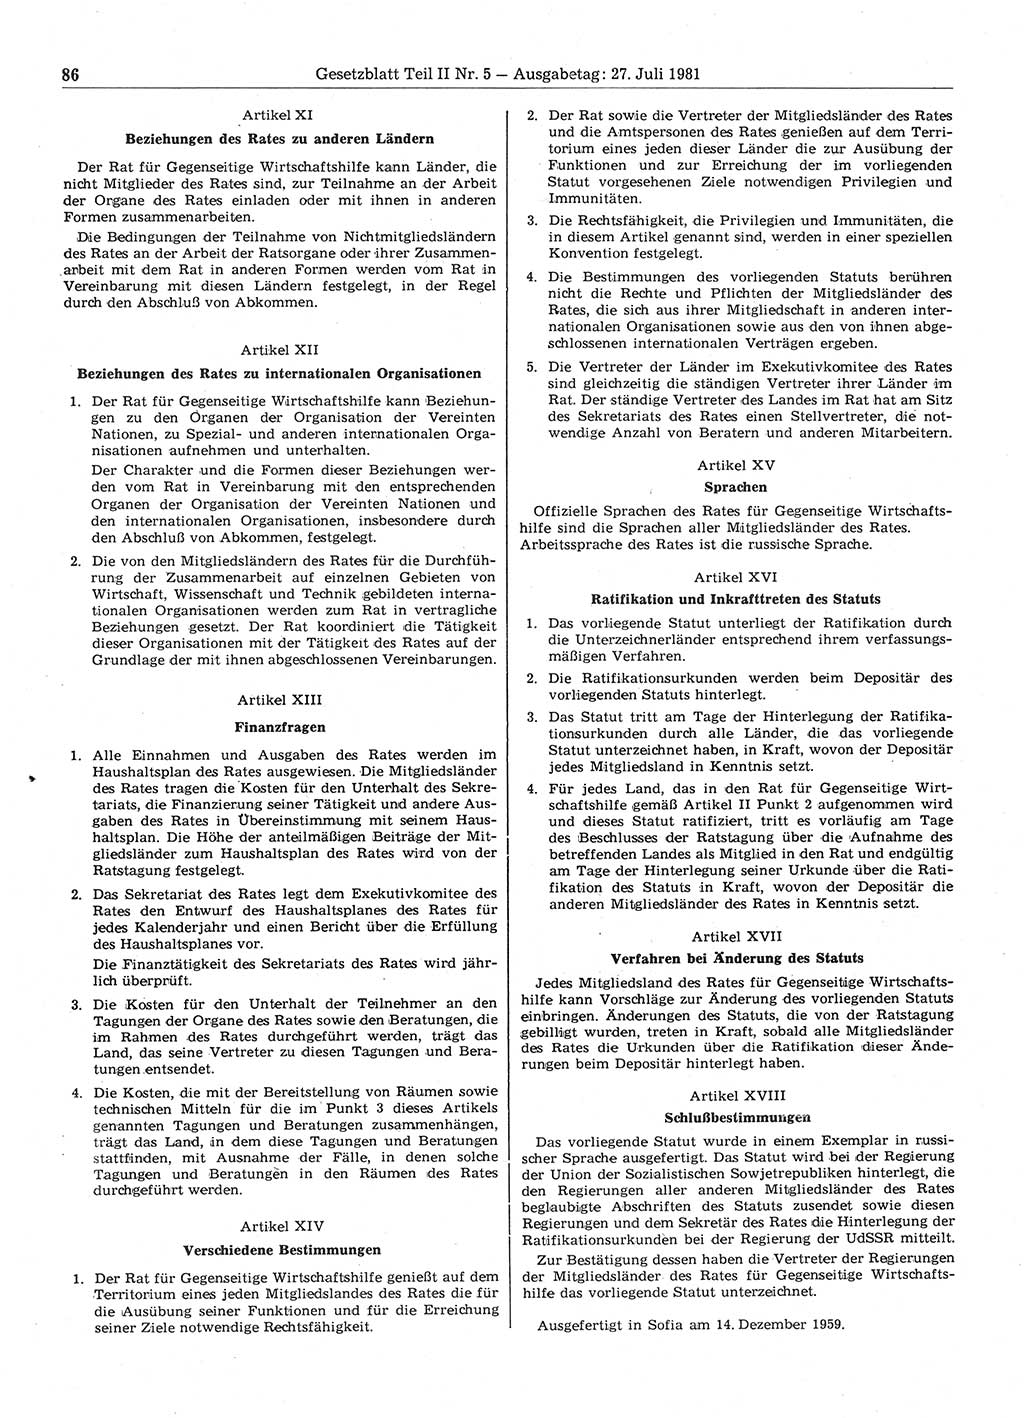 Gesetzblatt (GBl.) der Deutschen Demokratischen Republik (DDR) Teil ⅠⅠ 1981, Seite 86 (GBl. DDR ⅠⅠ 1981, S. 86)